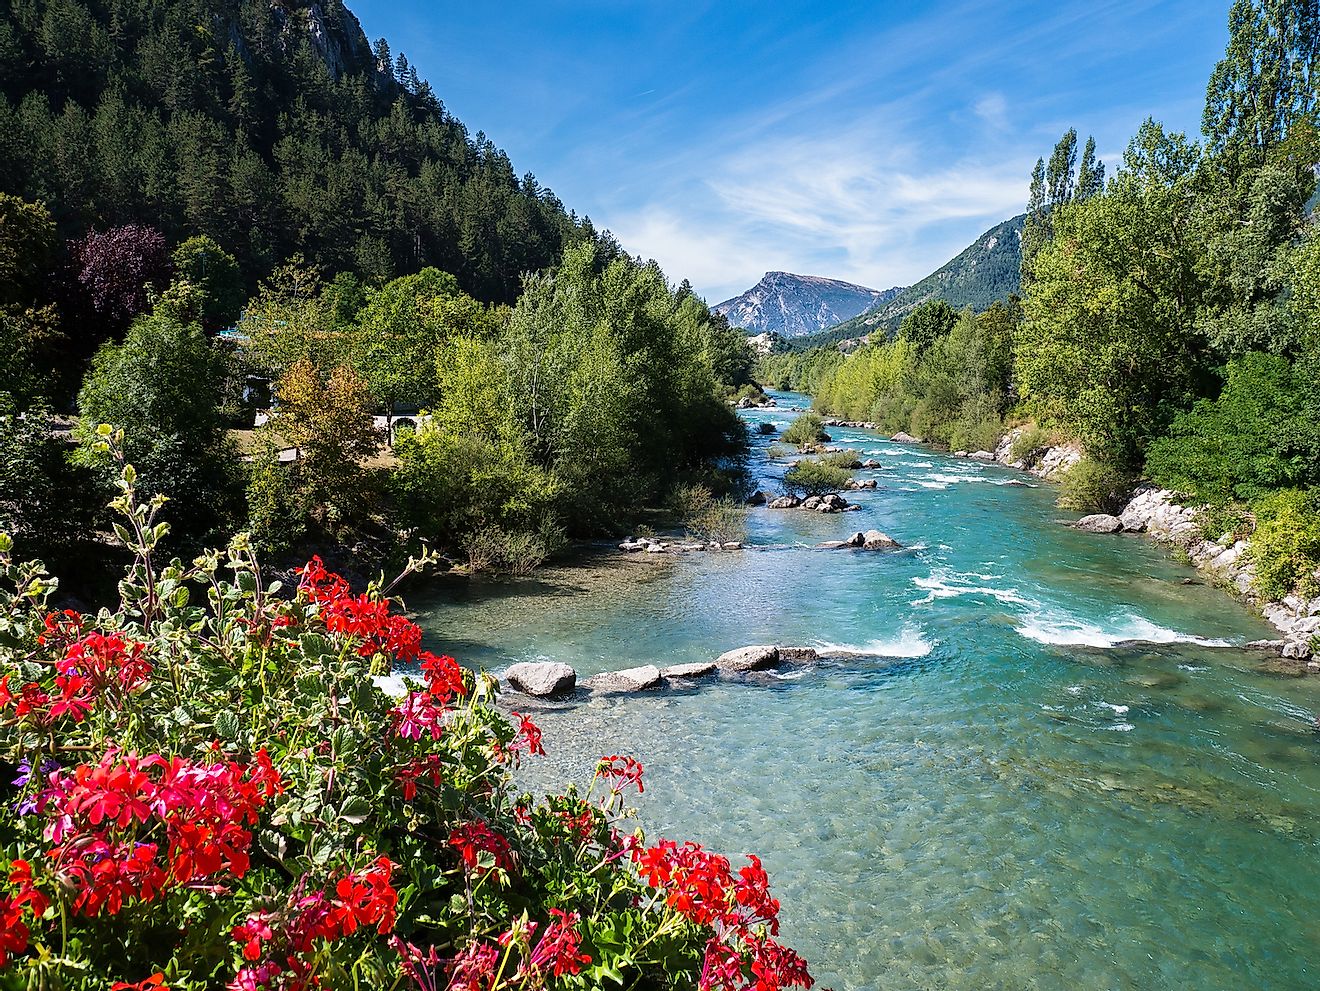 Gorges du Verdon - River in France. Image credit: Daniel Harwardt/Shutterstock.com